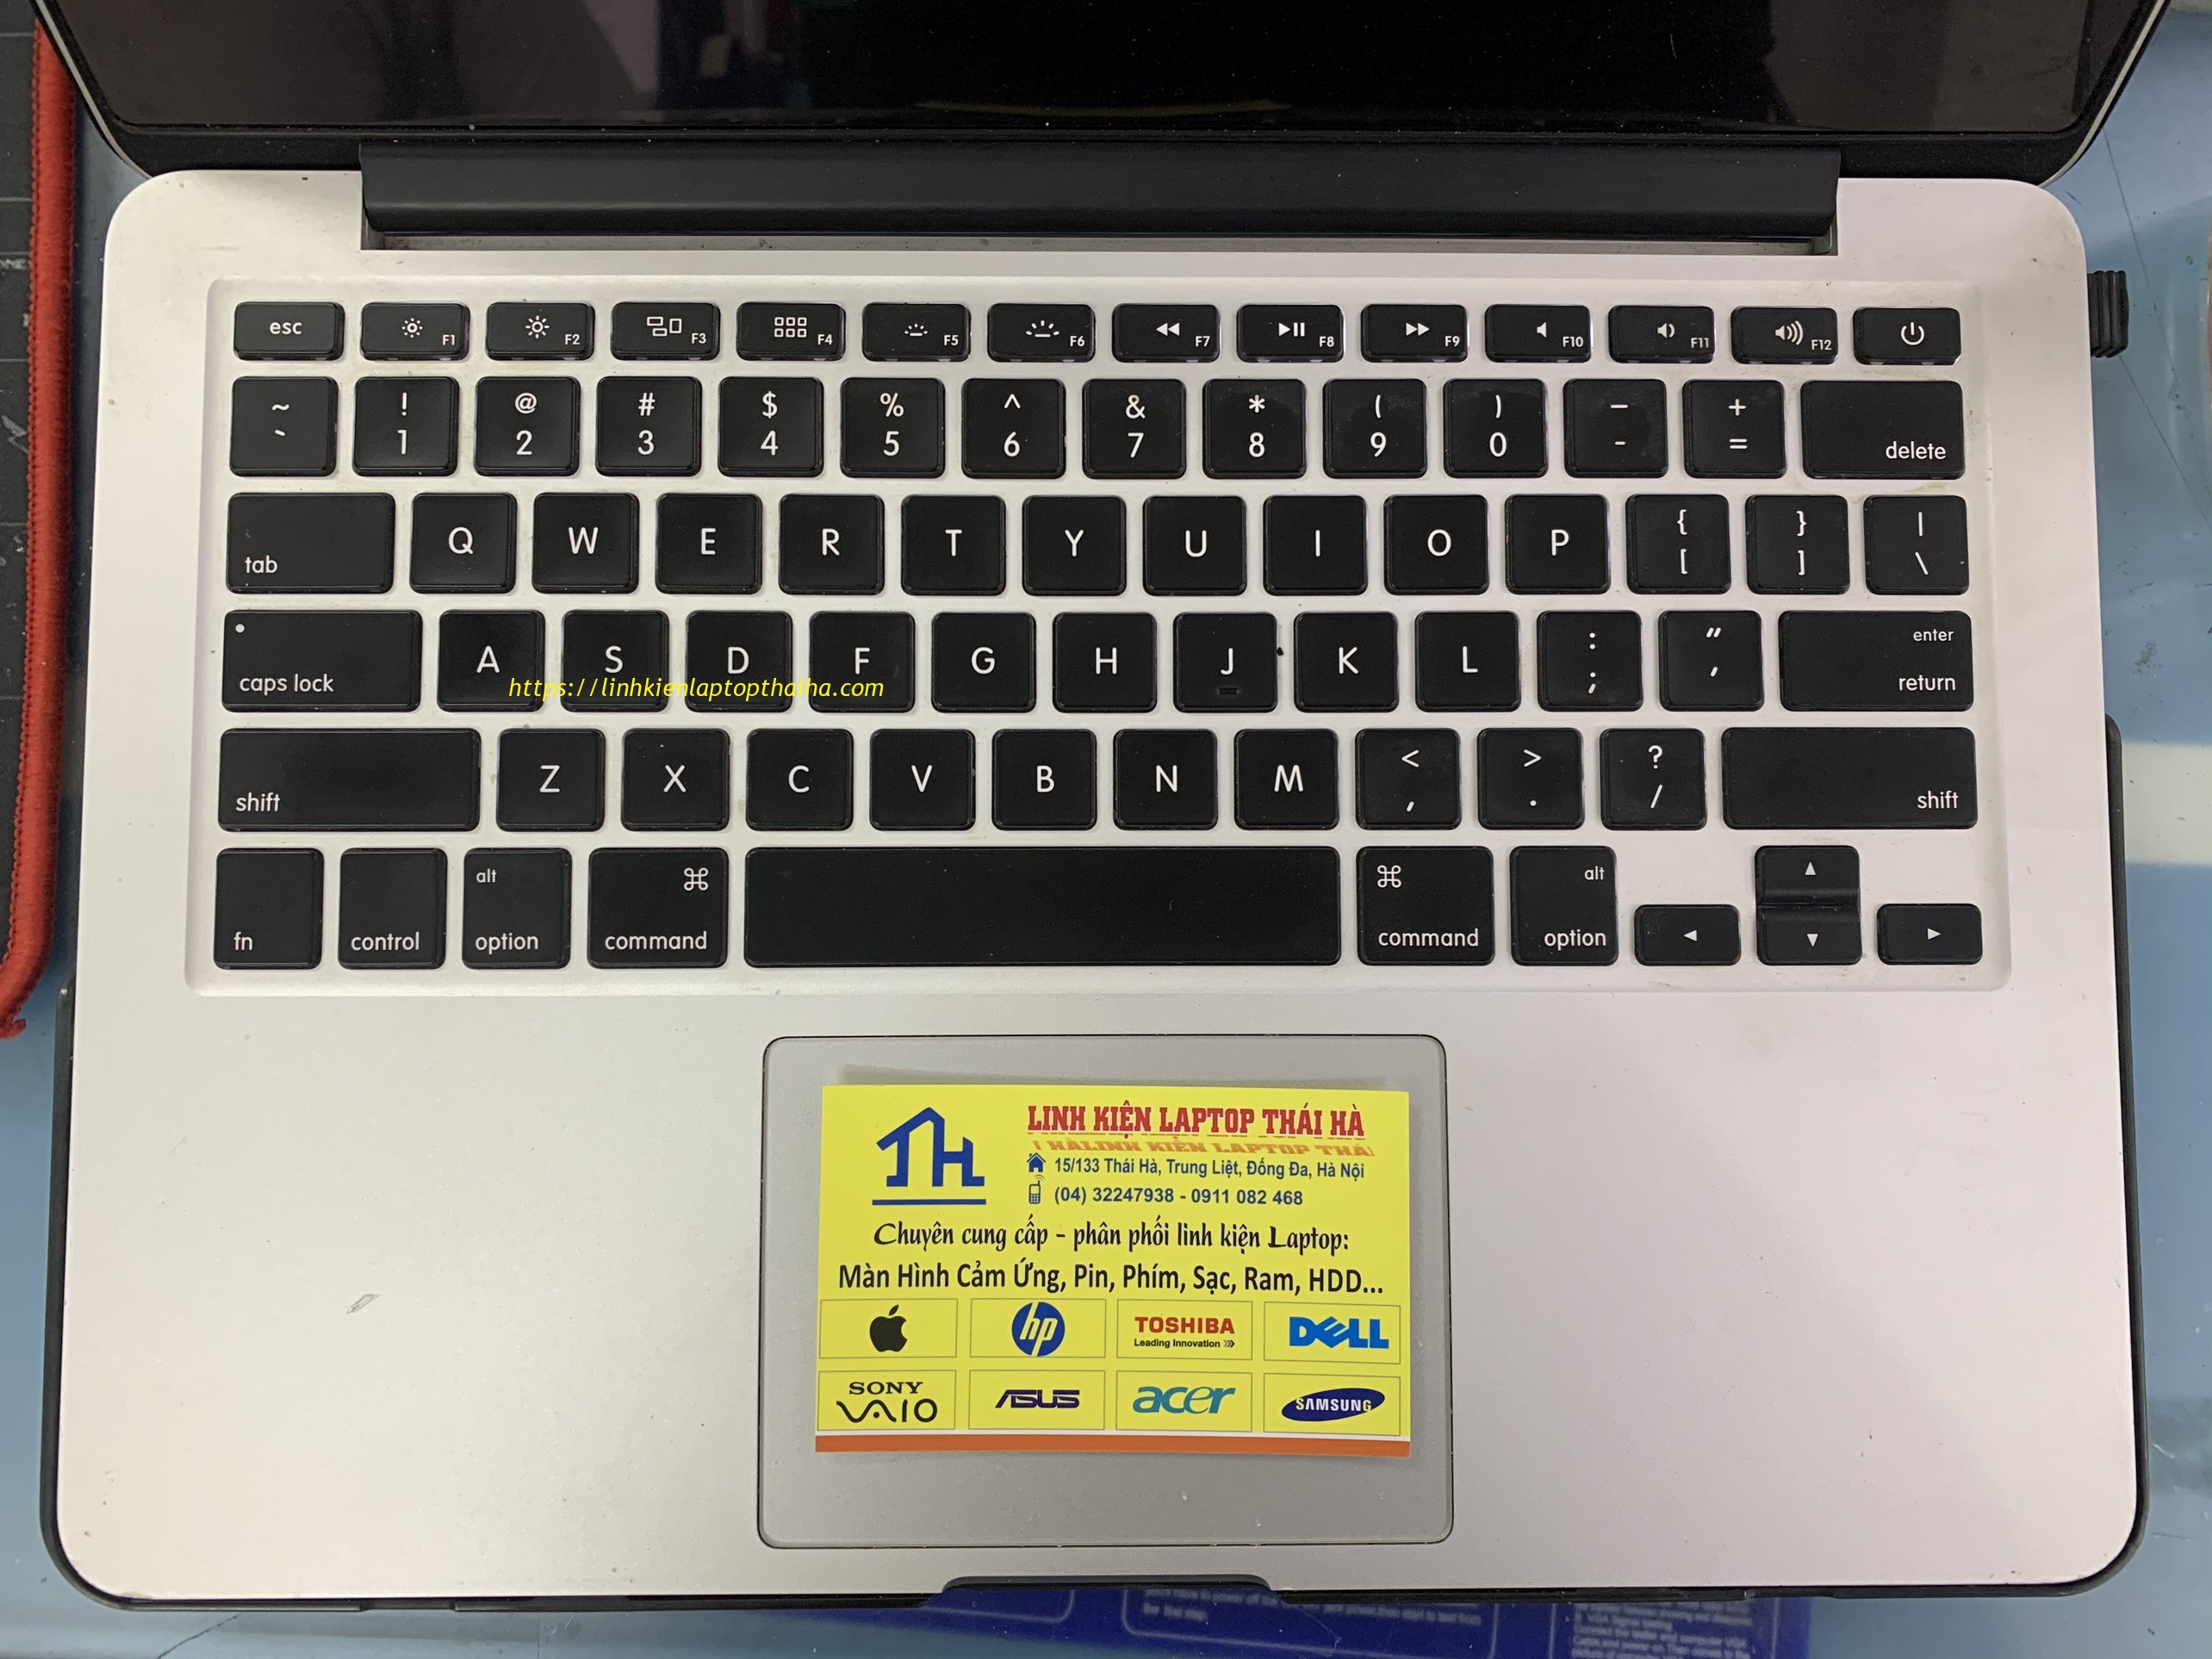 Sửa bàn phím MacBook chính hãng, bảo hành 12 tháng tại Hà Nội